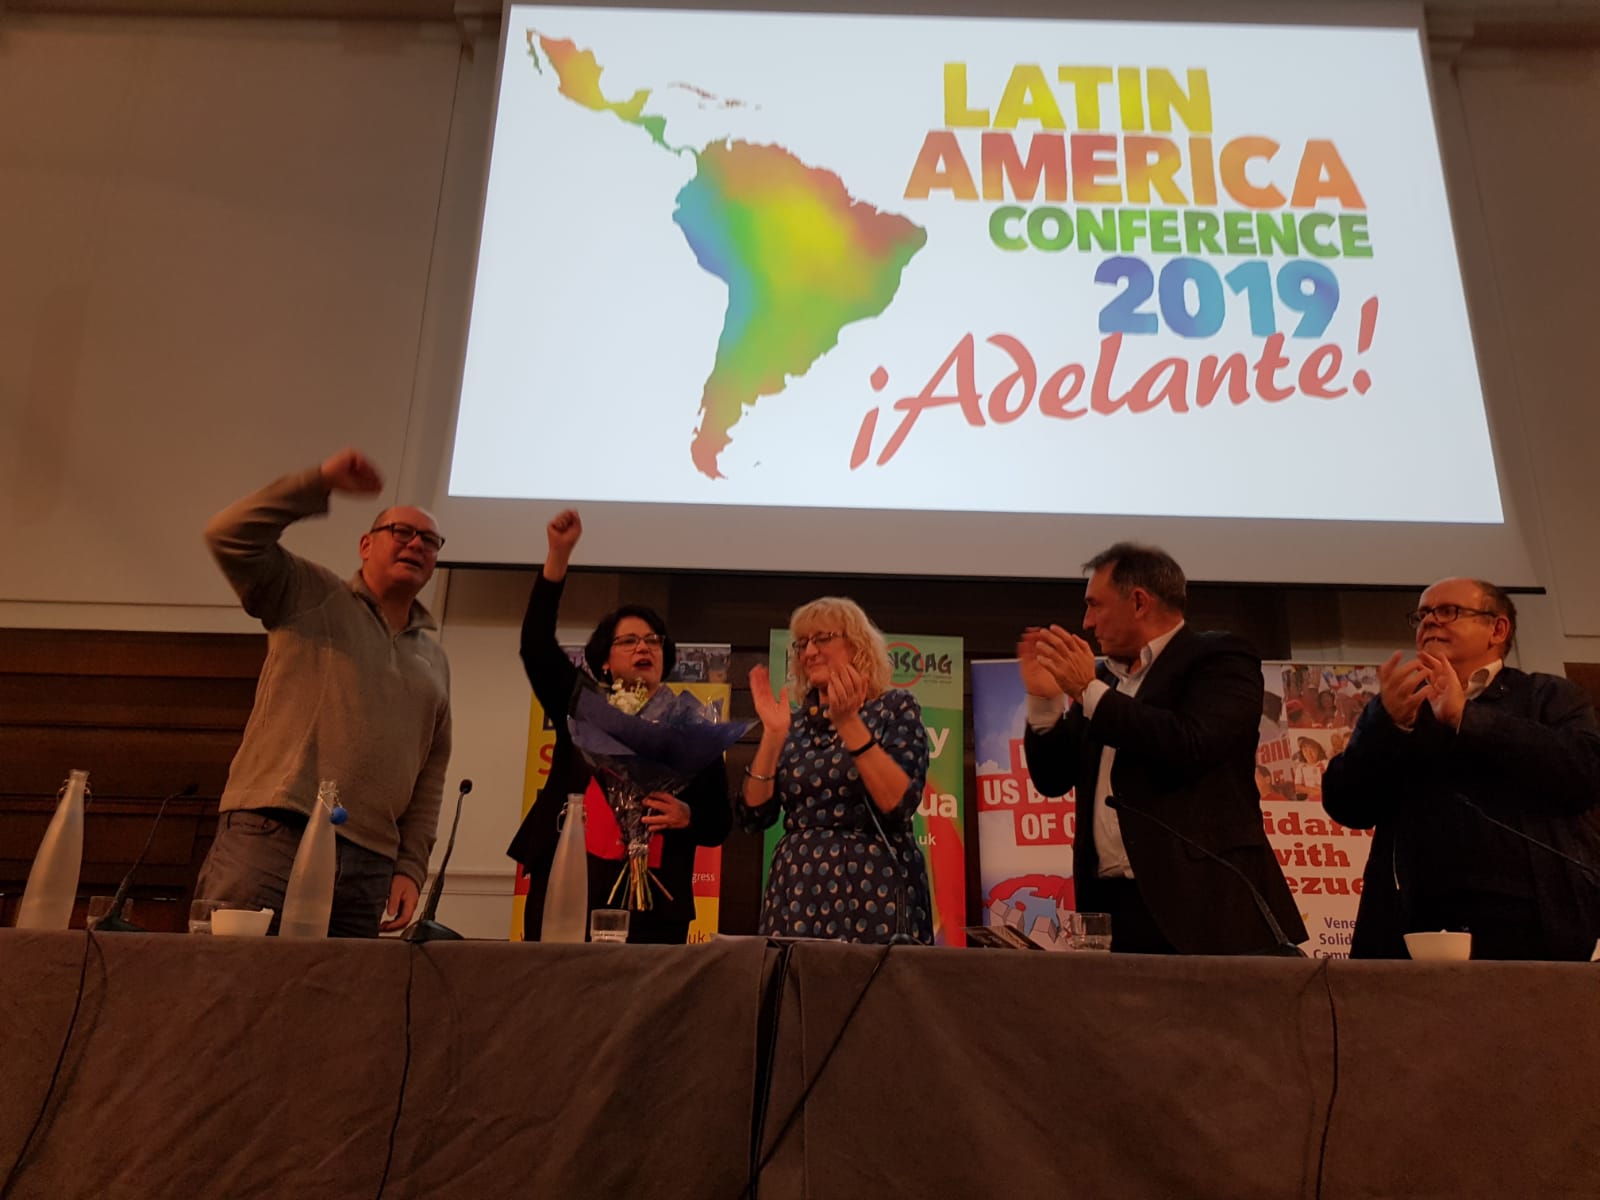 La Conferencia Latinoamérica 2019 ¡Adelante! comenzó este sábado en Londres con un mensaje de solidaridad hacia el pueblo de Bolivia.